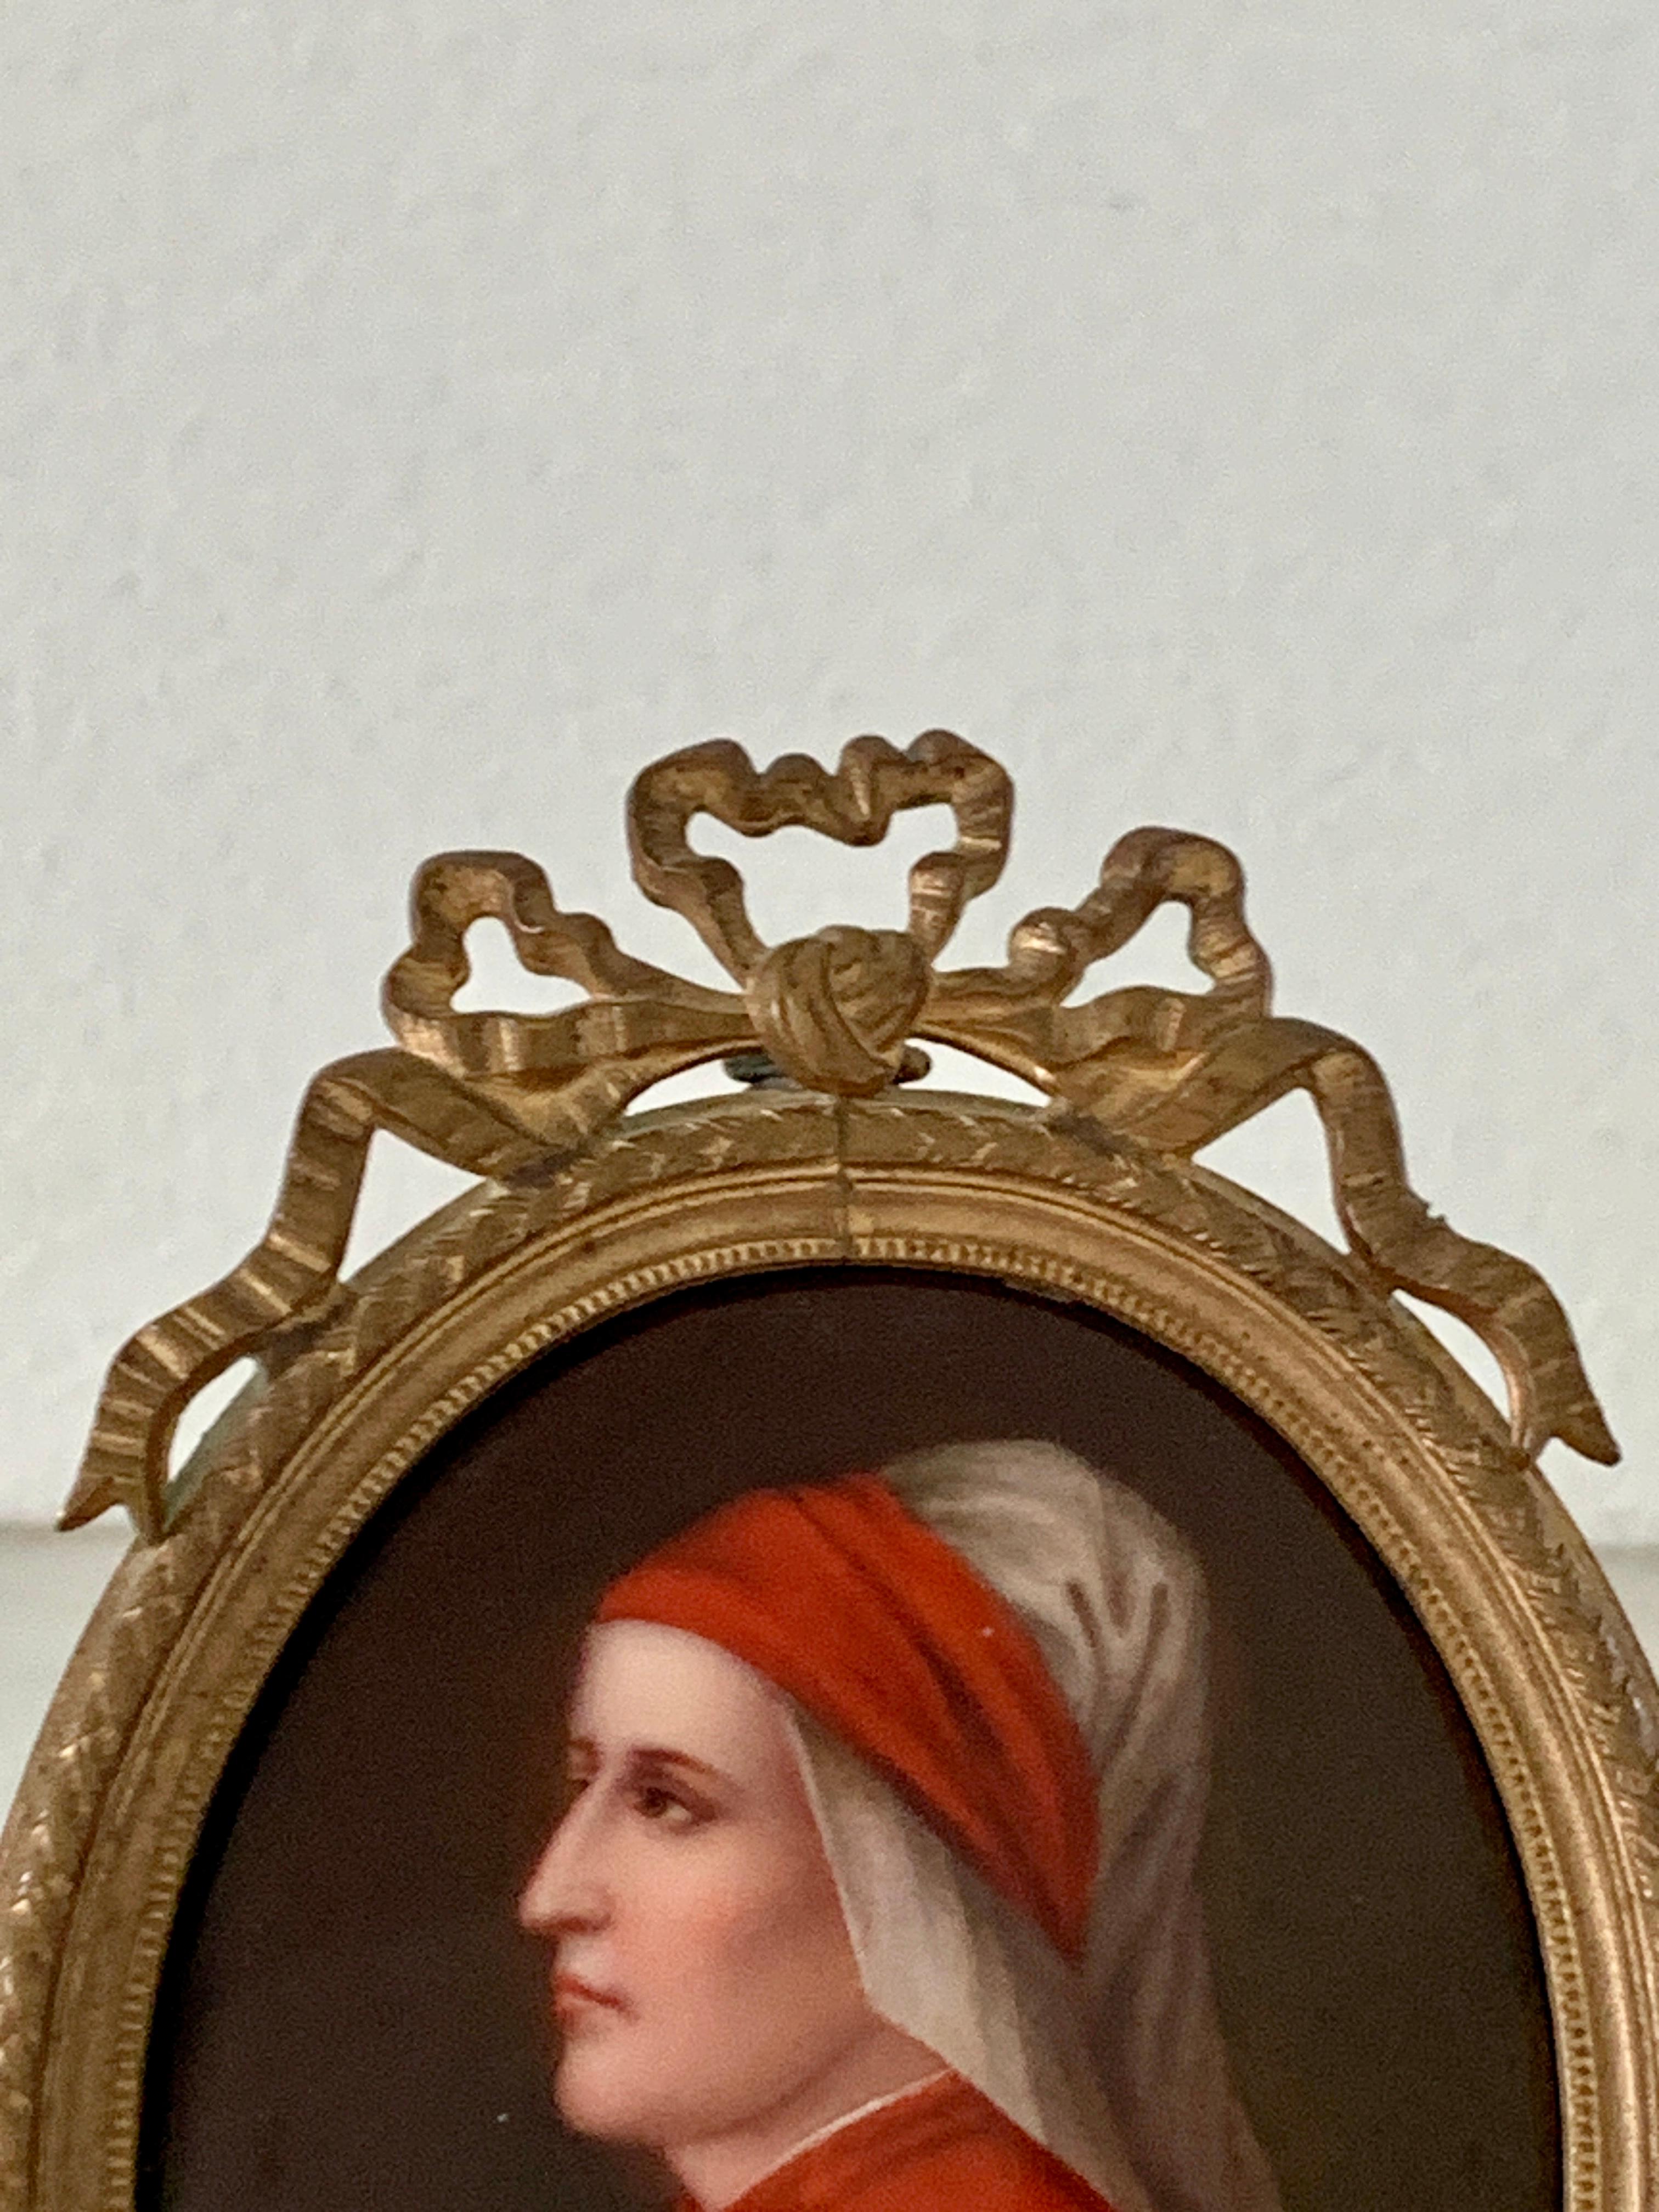 Eine beeindruckende italienische Renaissance oder Grand Tour Miniatur Porträt des italienischen Dichters Dante Alighieria 

Italien, Ende 19. Jahrhundert

Öl auf Porzellan, präsentiert in einem Messingrahmen

Maße: 3,13 